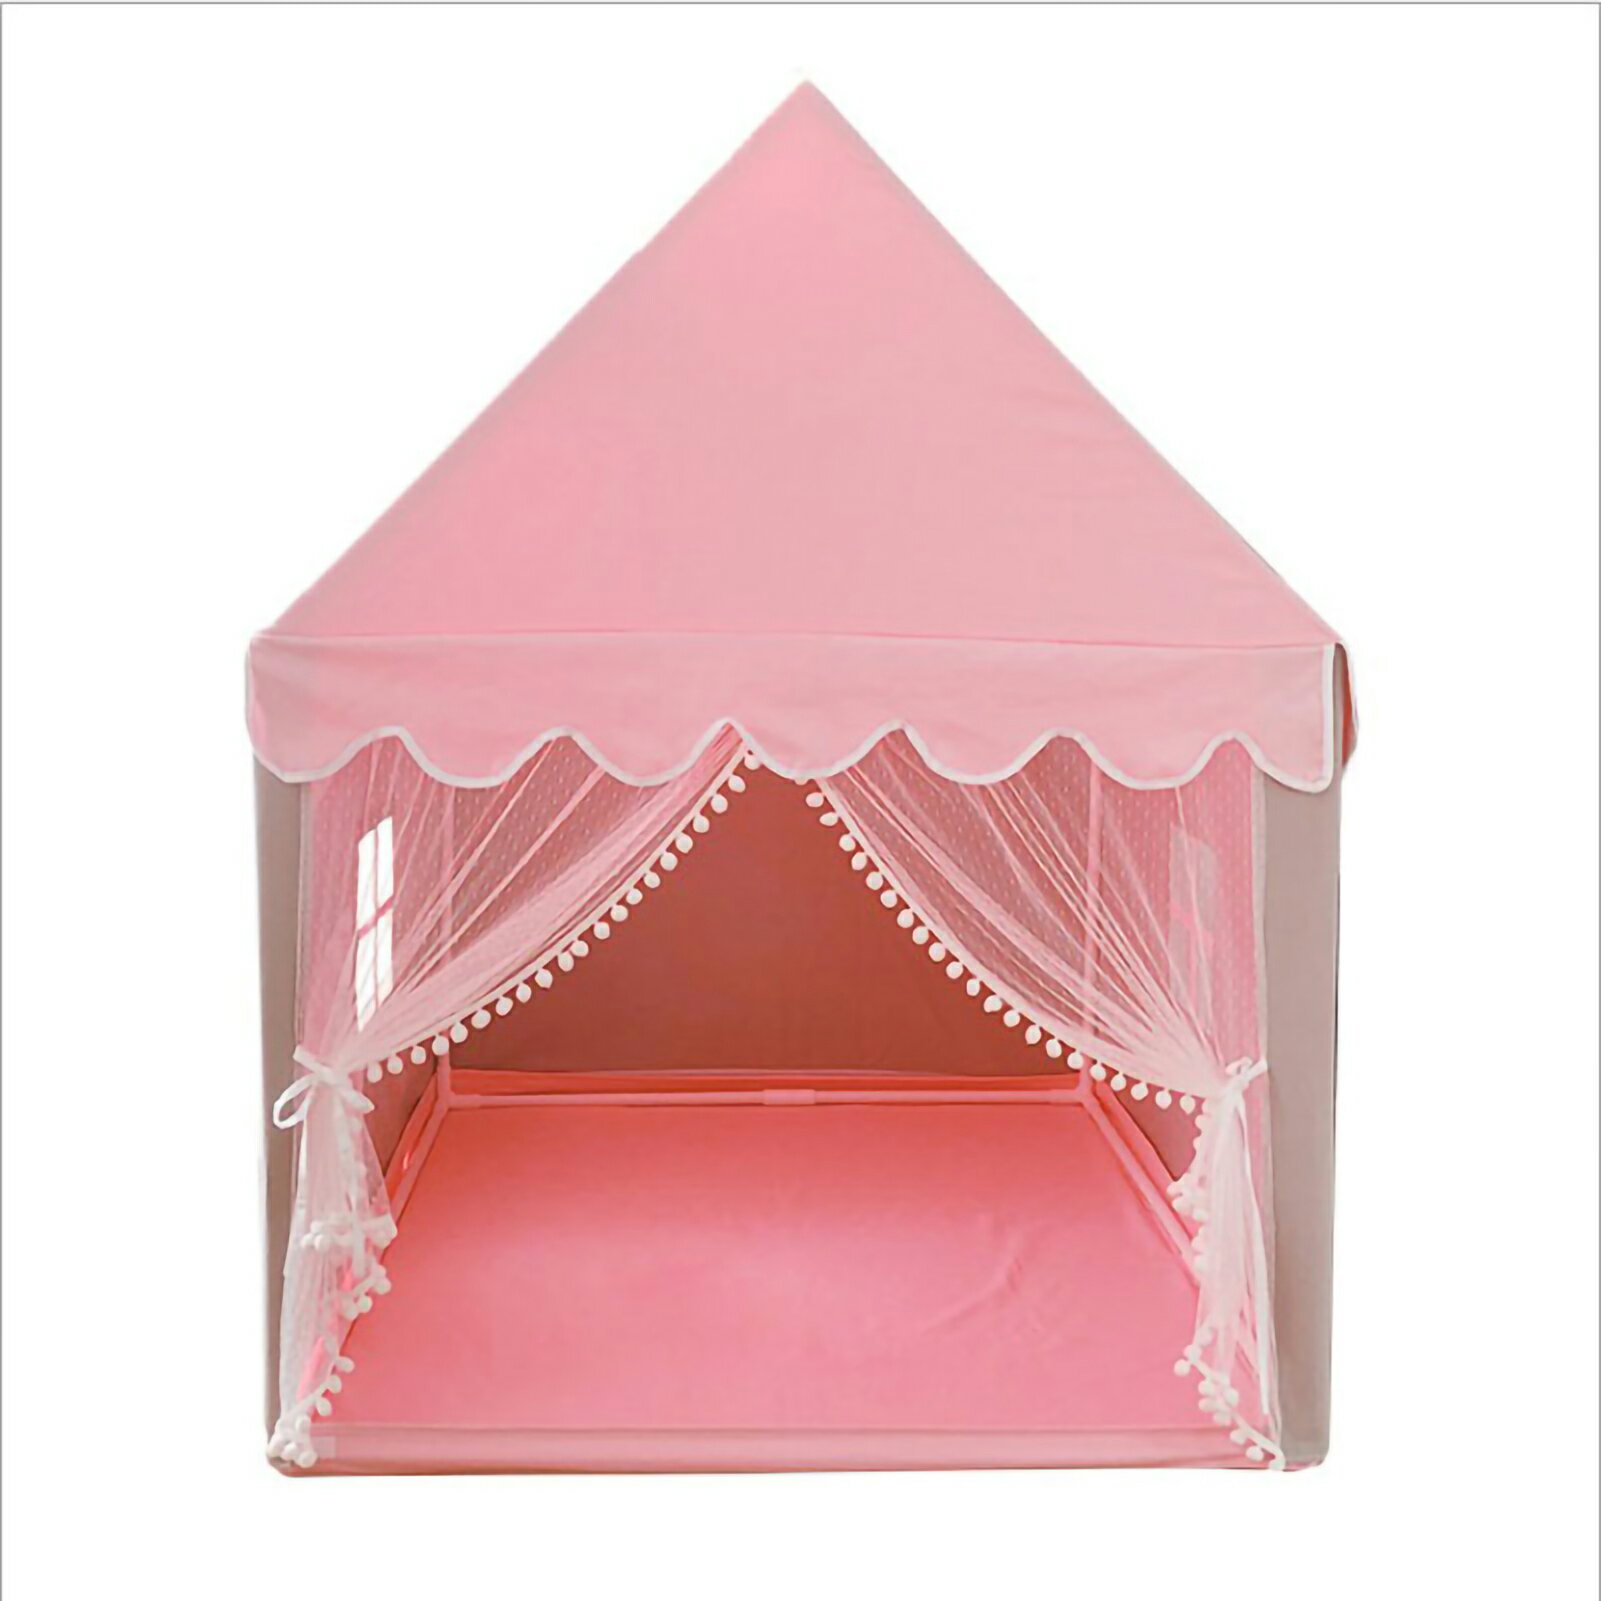 プレイハウス用テント子供用プレイハウス用おもちゃ 美しい子供用ゲームテント 大きな窓レースカーテン付き